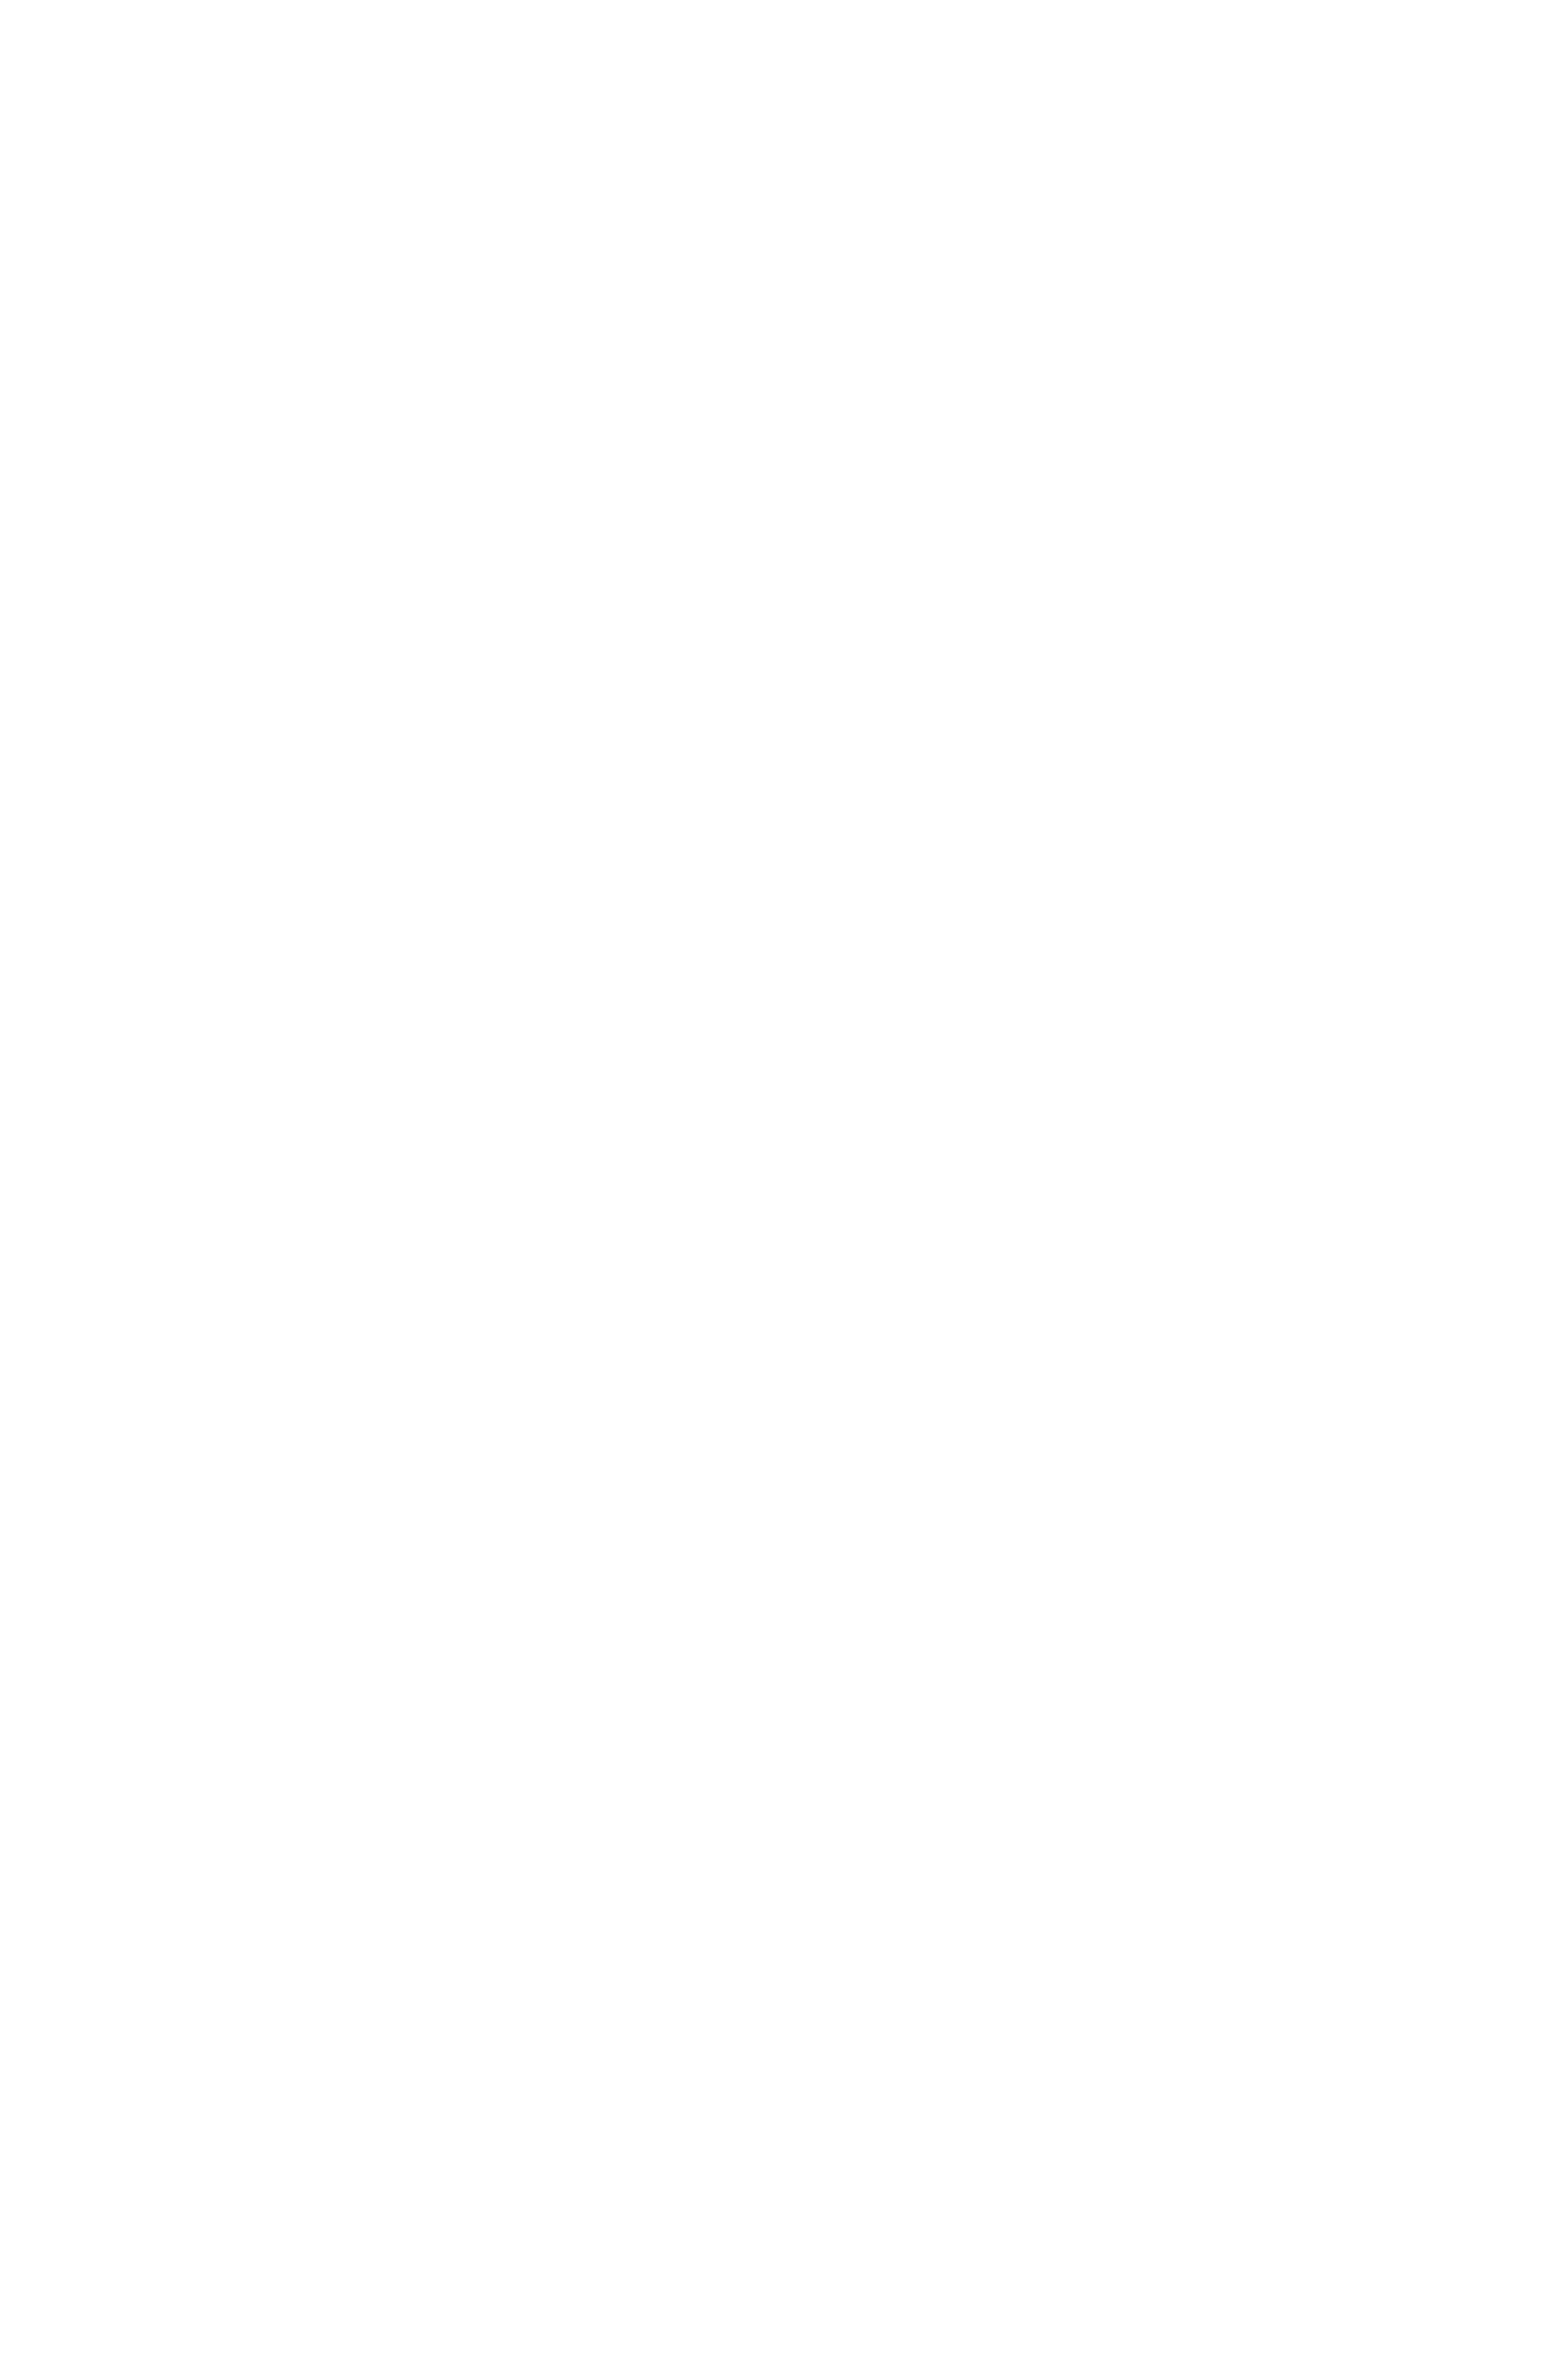 Jakobsdals Skål Juno høyde 10,5 cm